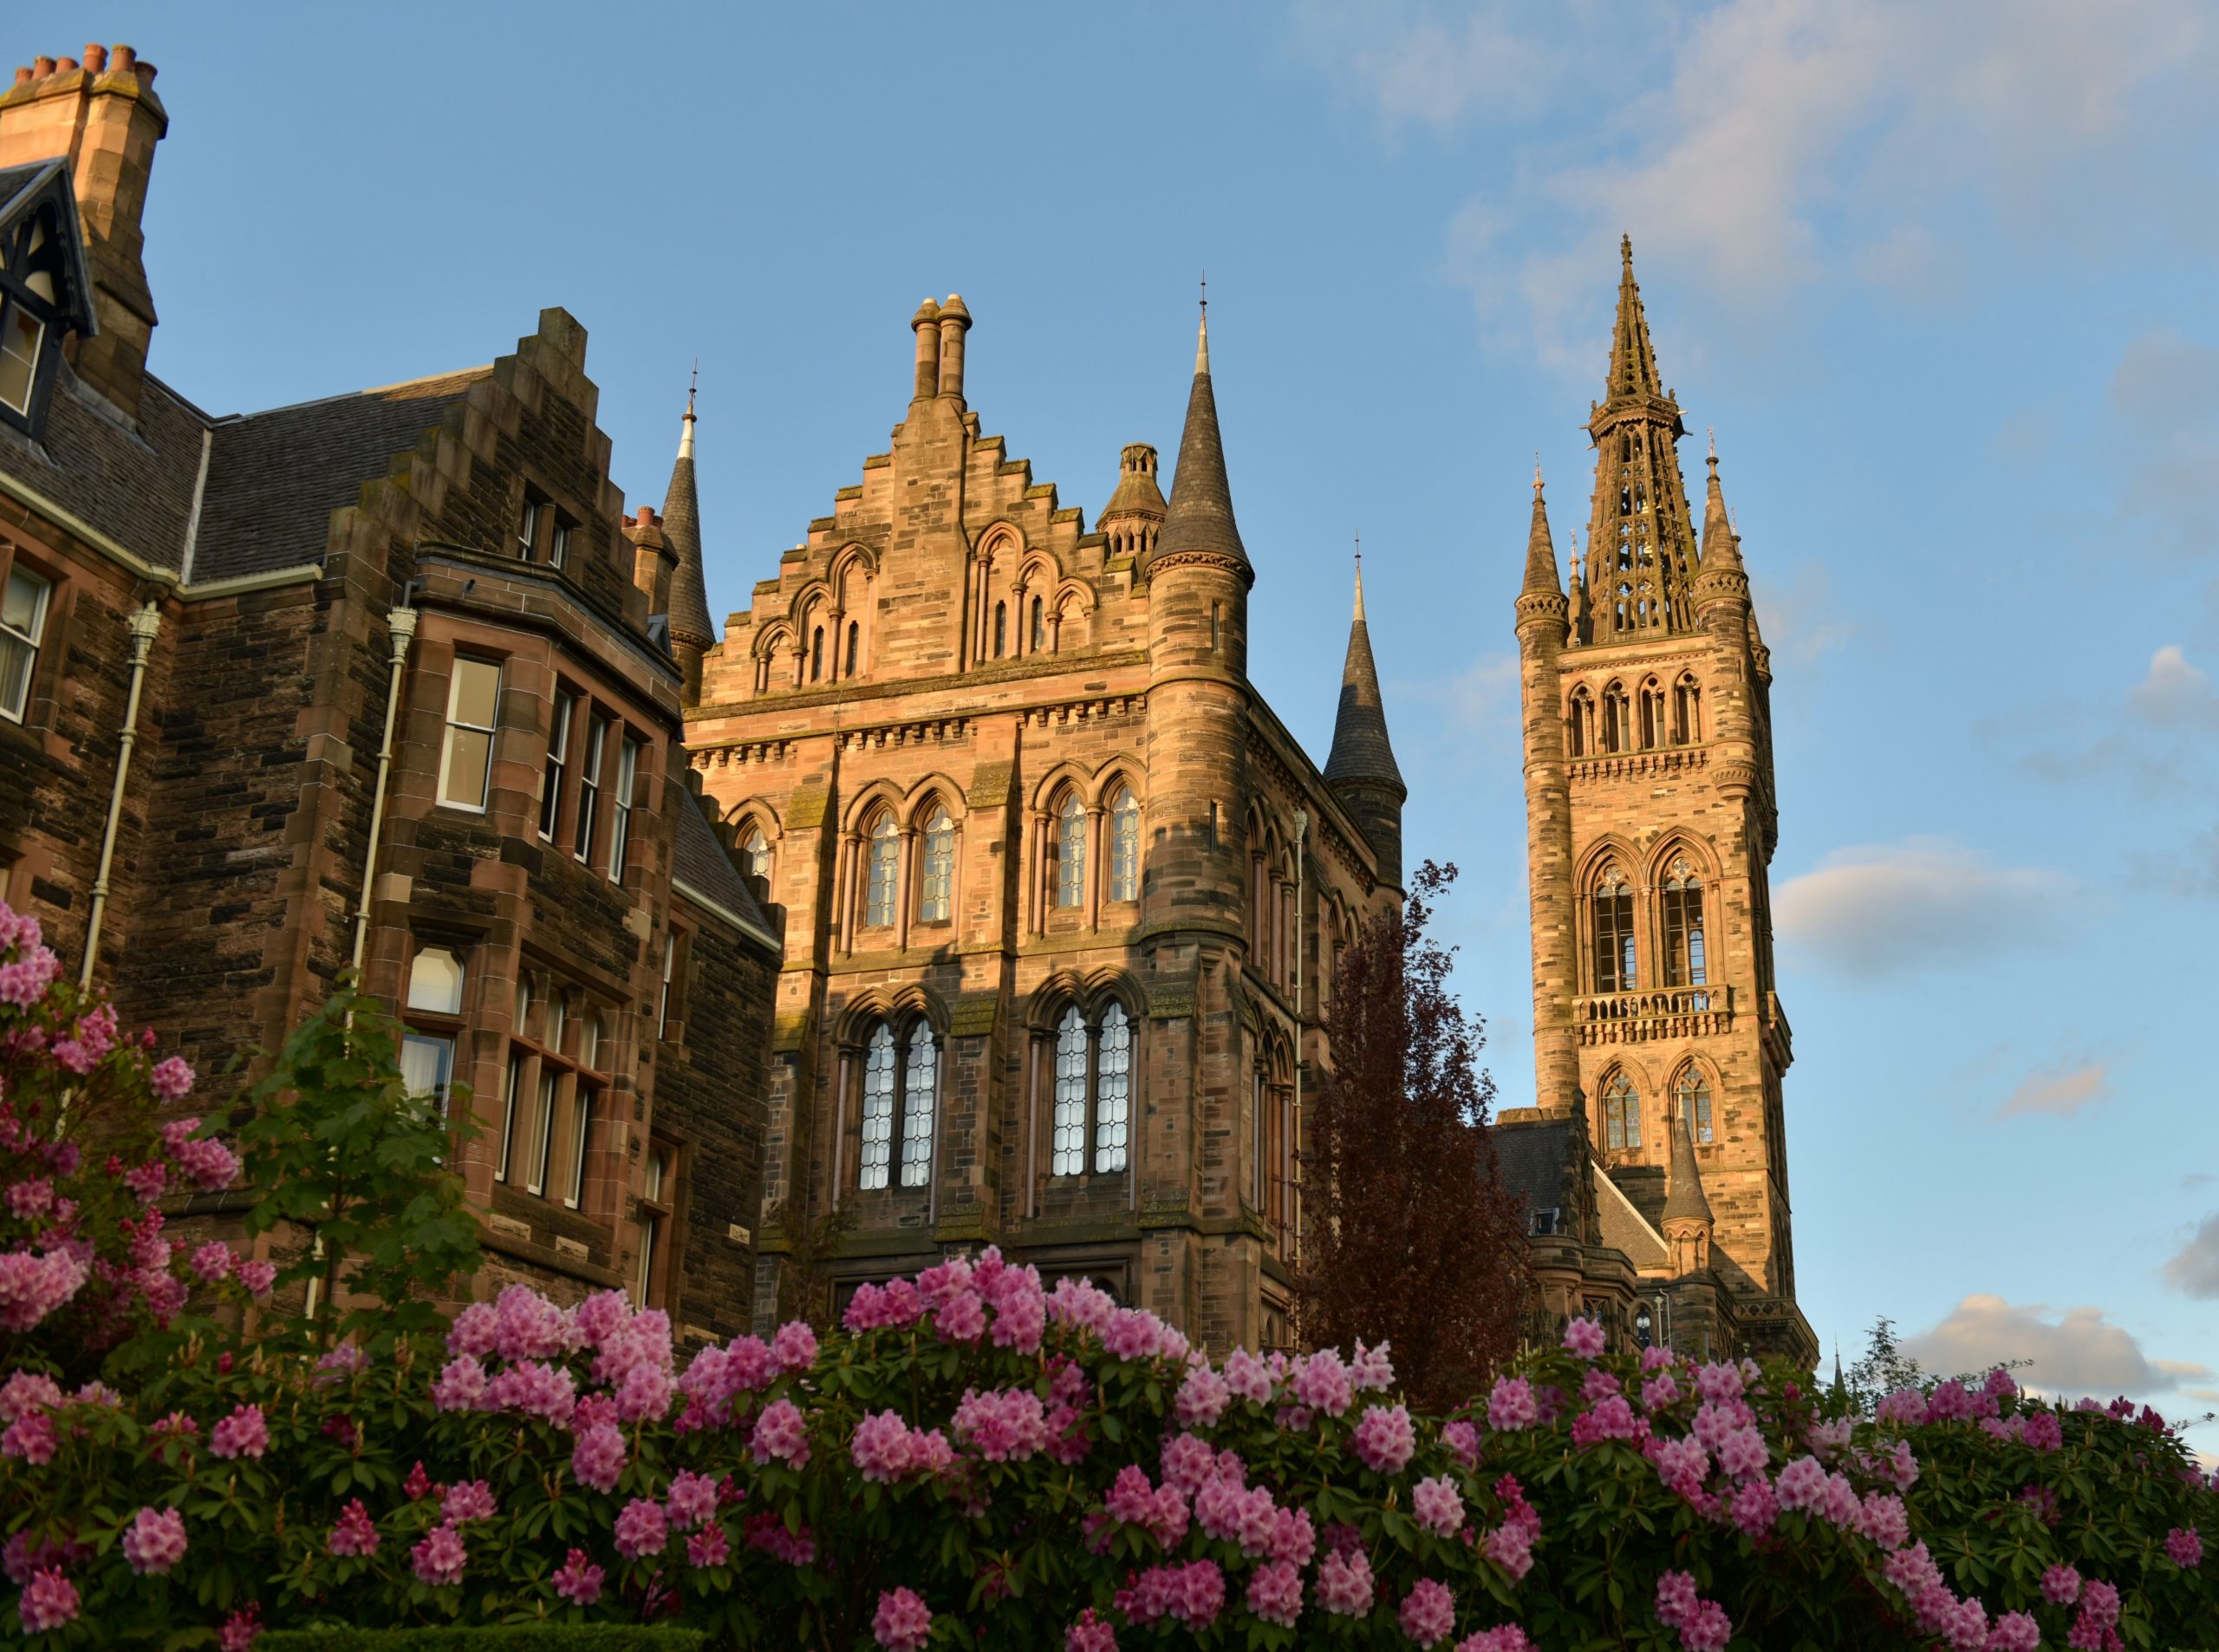 Universities In Glasgow